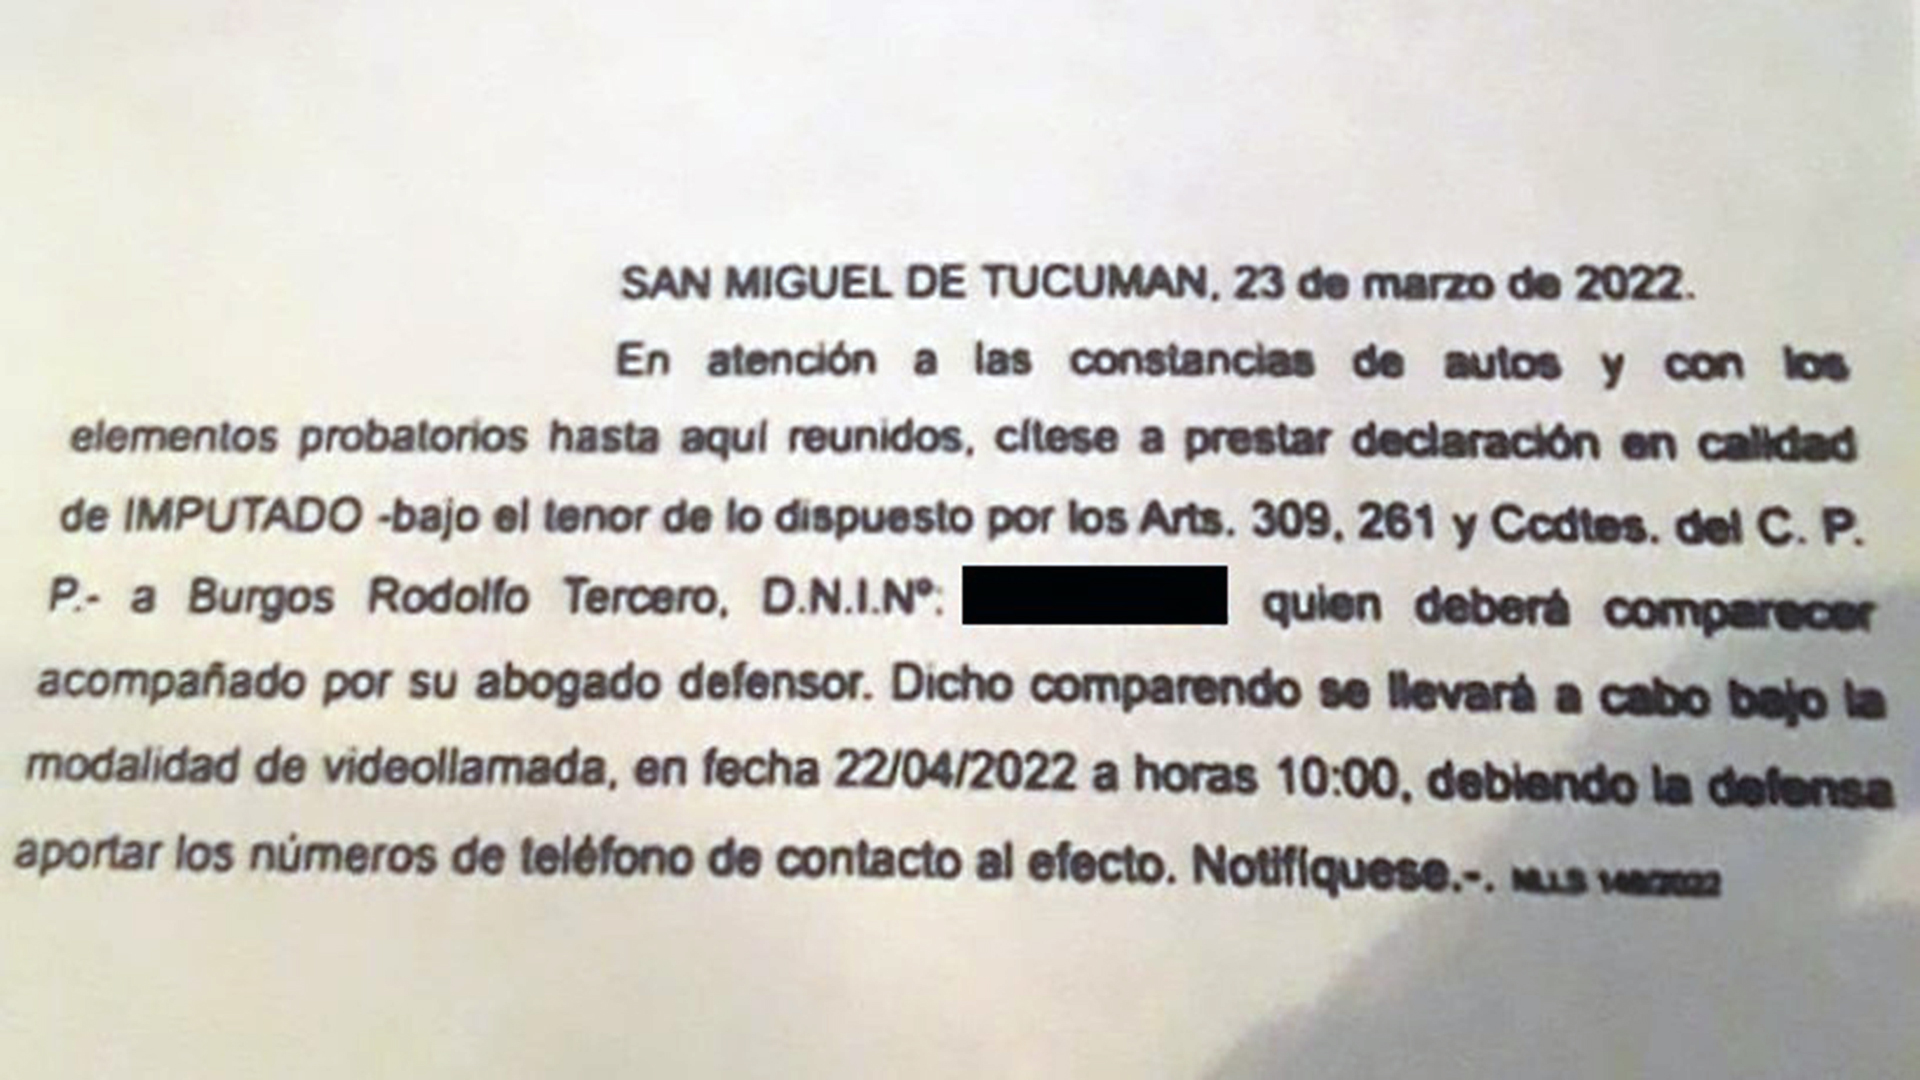 Rodolfo Tercero Burgos deberá prestar declaración indagatoria el próximo viernes 22 de abril (Foto/Gentileza El Tucumano)